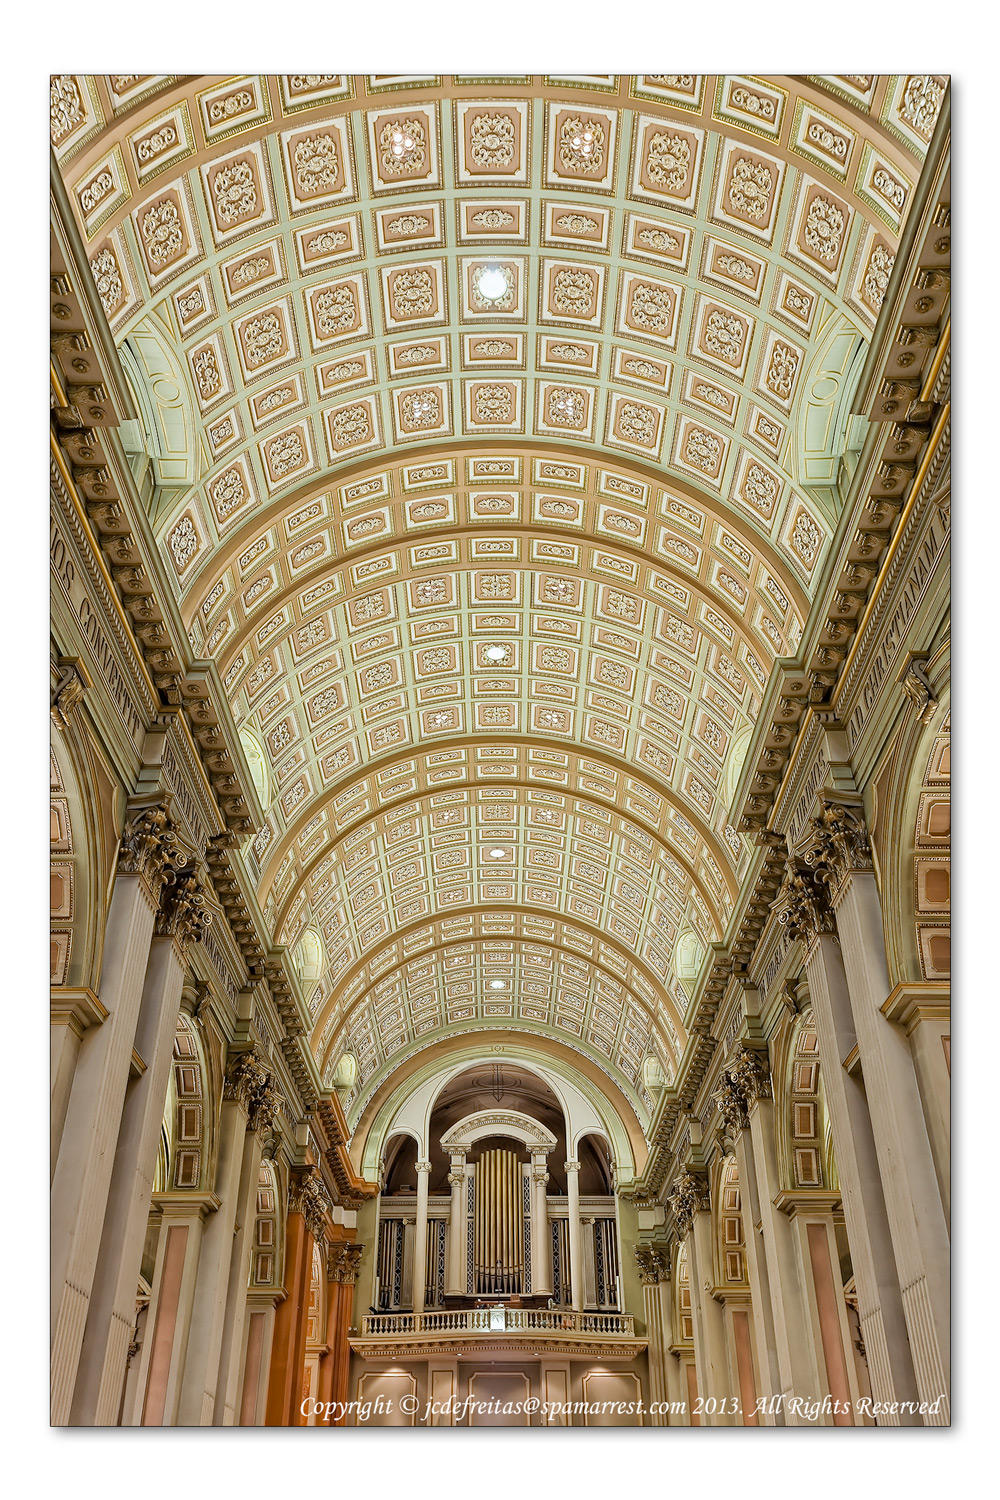 2014 - Cathédrale Marie-Reine-du-Monde - Montreal, Quebec - Canada